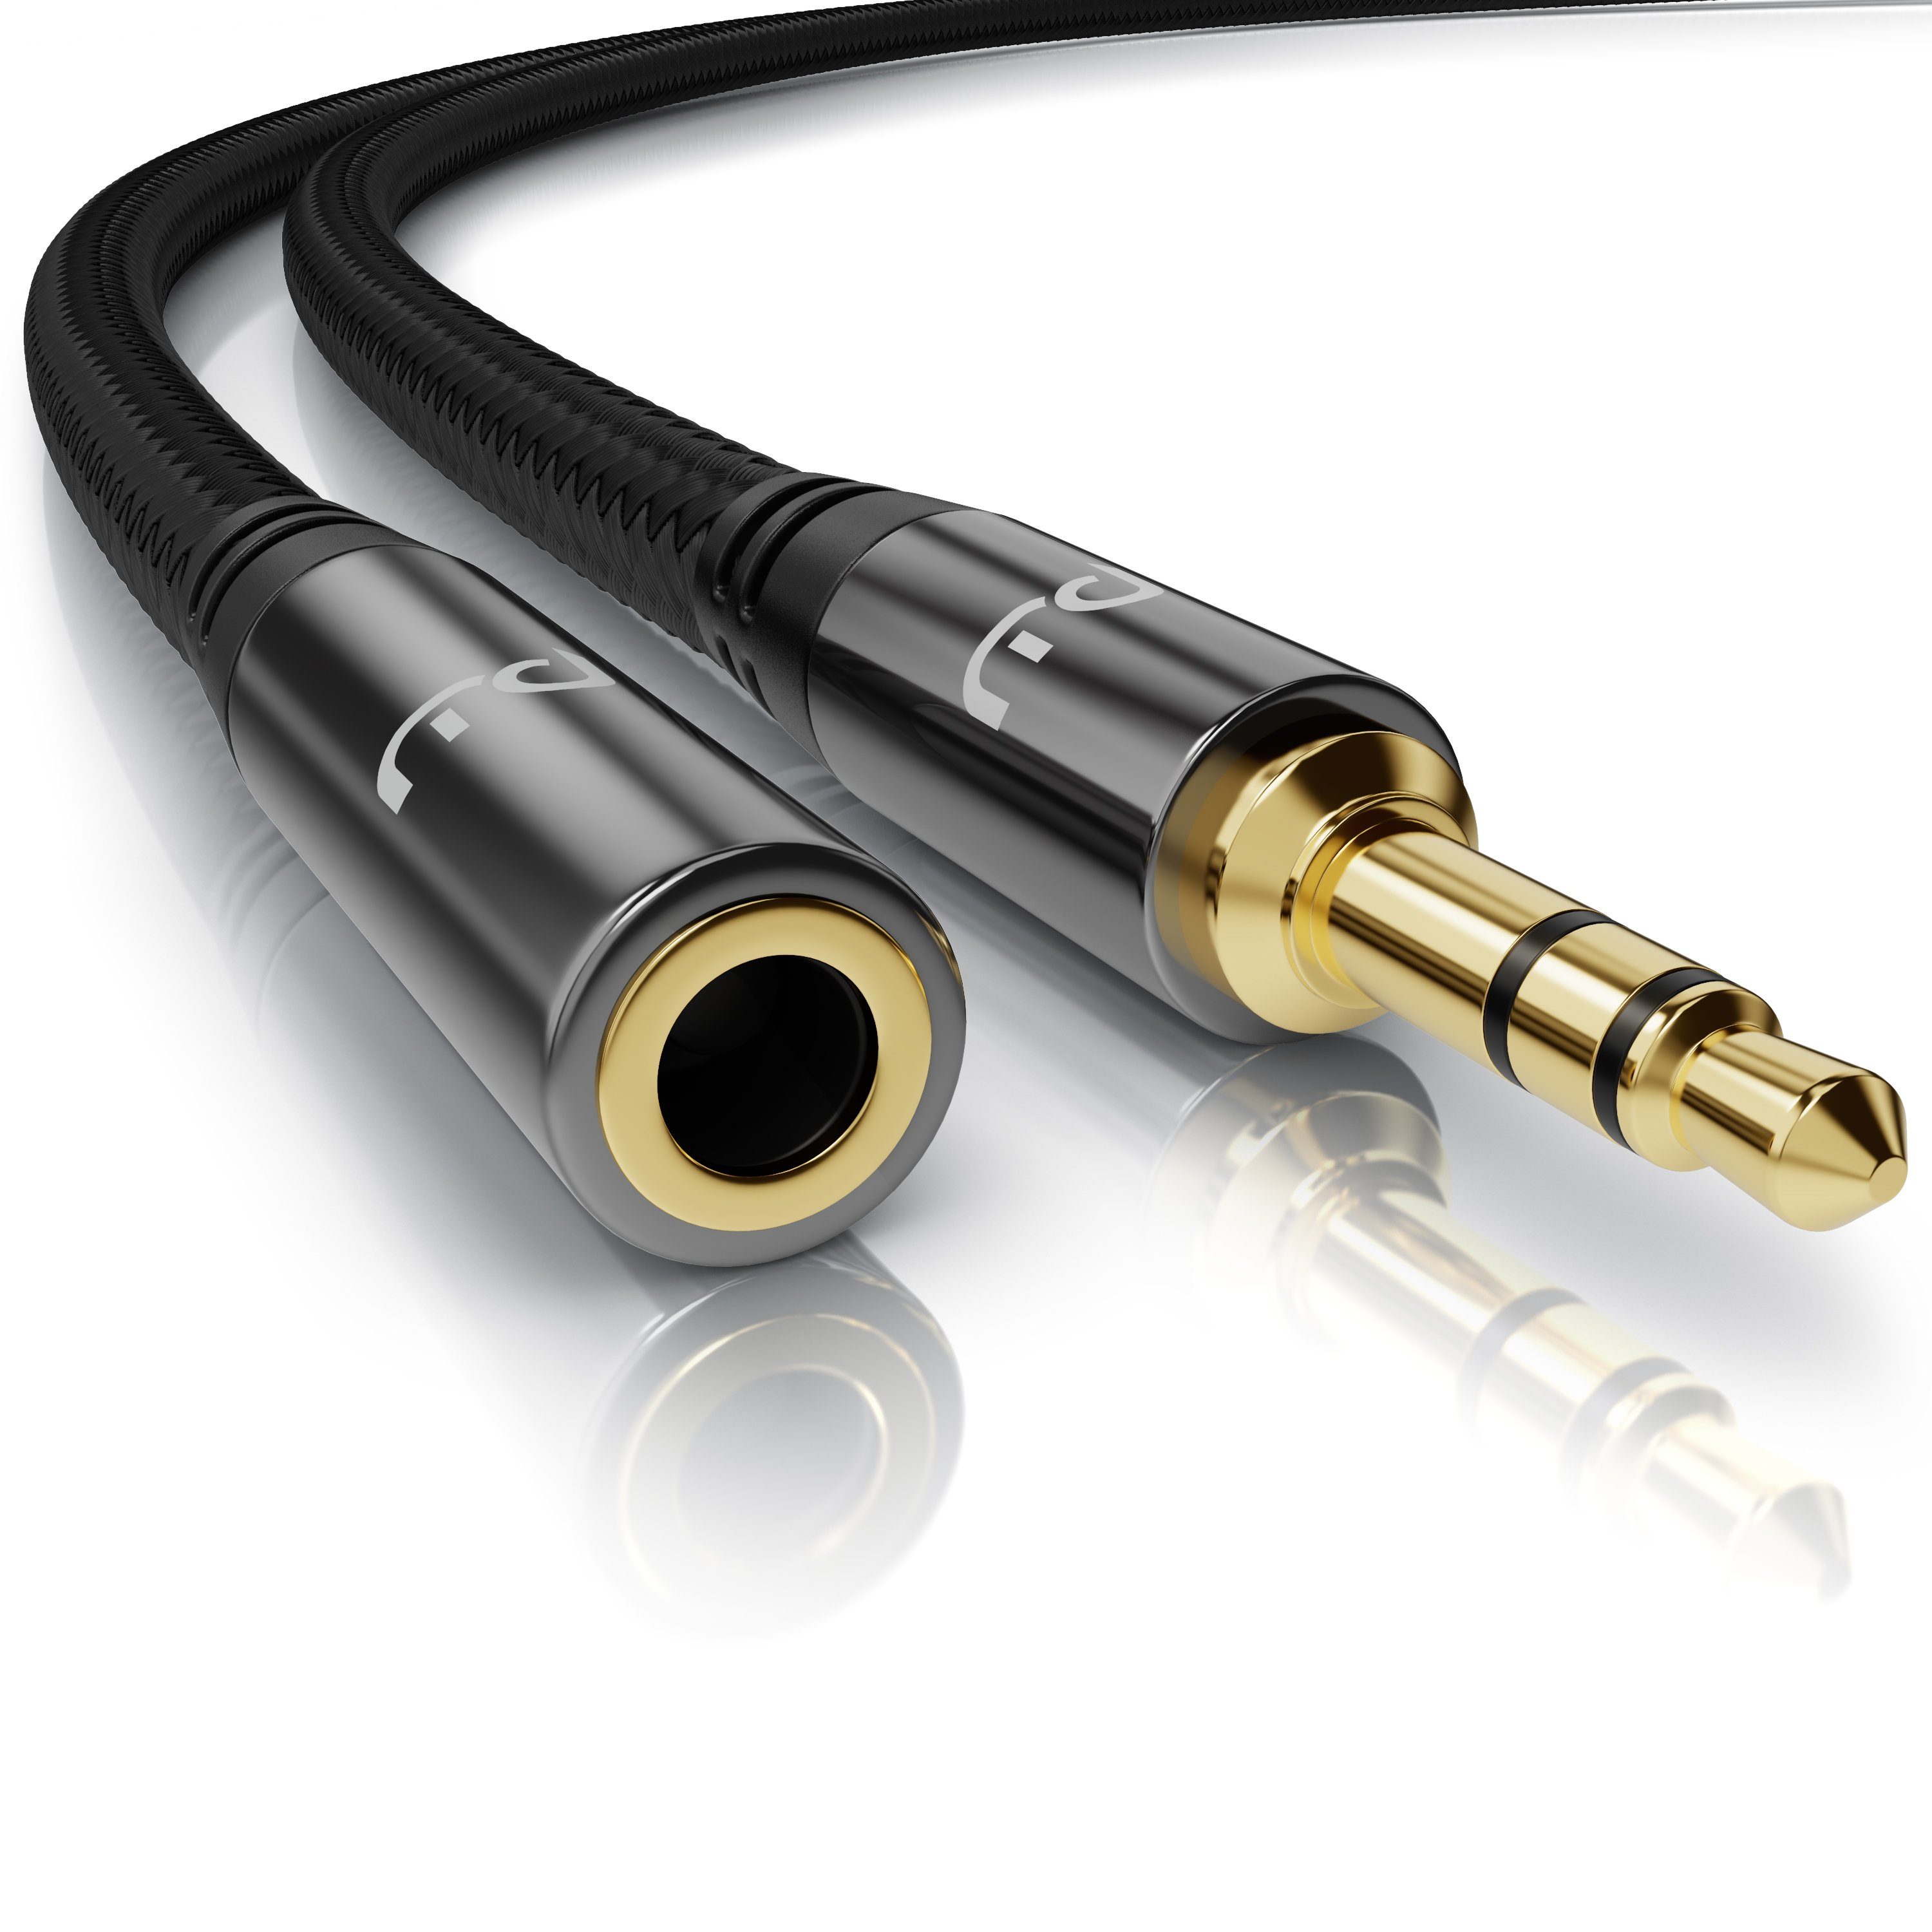 Primewire Audio-Kabel, AUX, 3,5 mm Klinke, 3,5 mm Buchse (150 cm),  Klinkenkabel 3,5 mm AUX - Audio Verbindungskabel / Kupplung mit Nylonmantel  online kaufen | OTTO